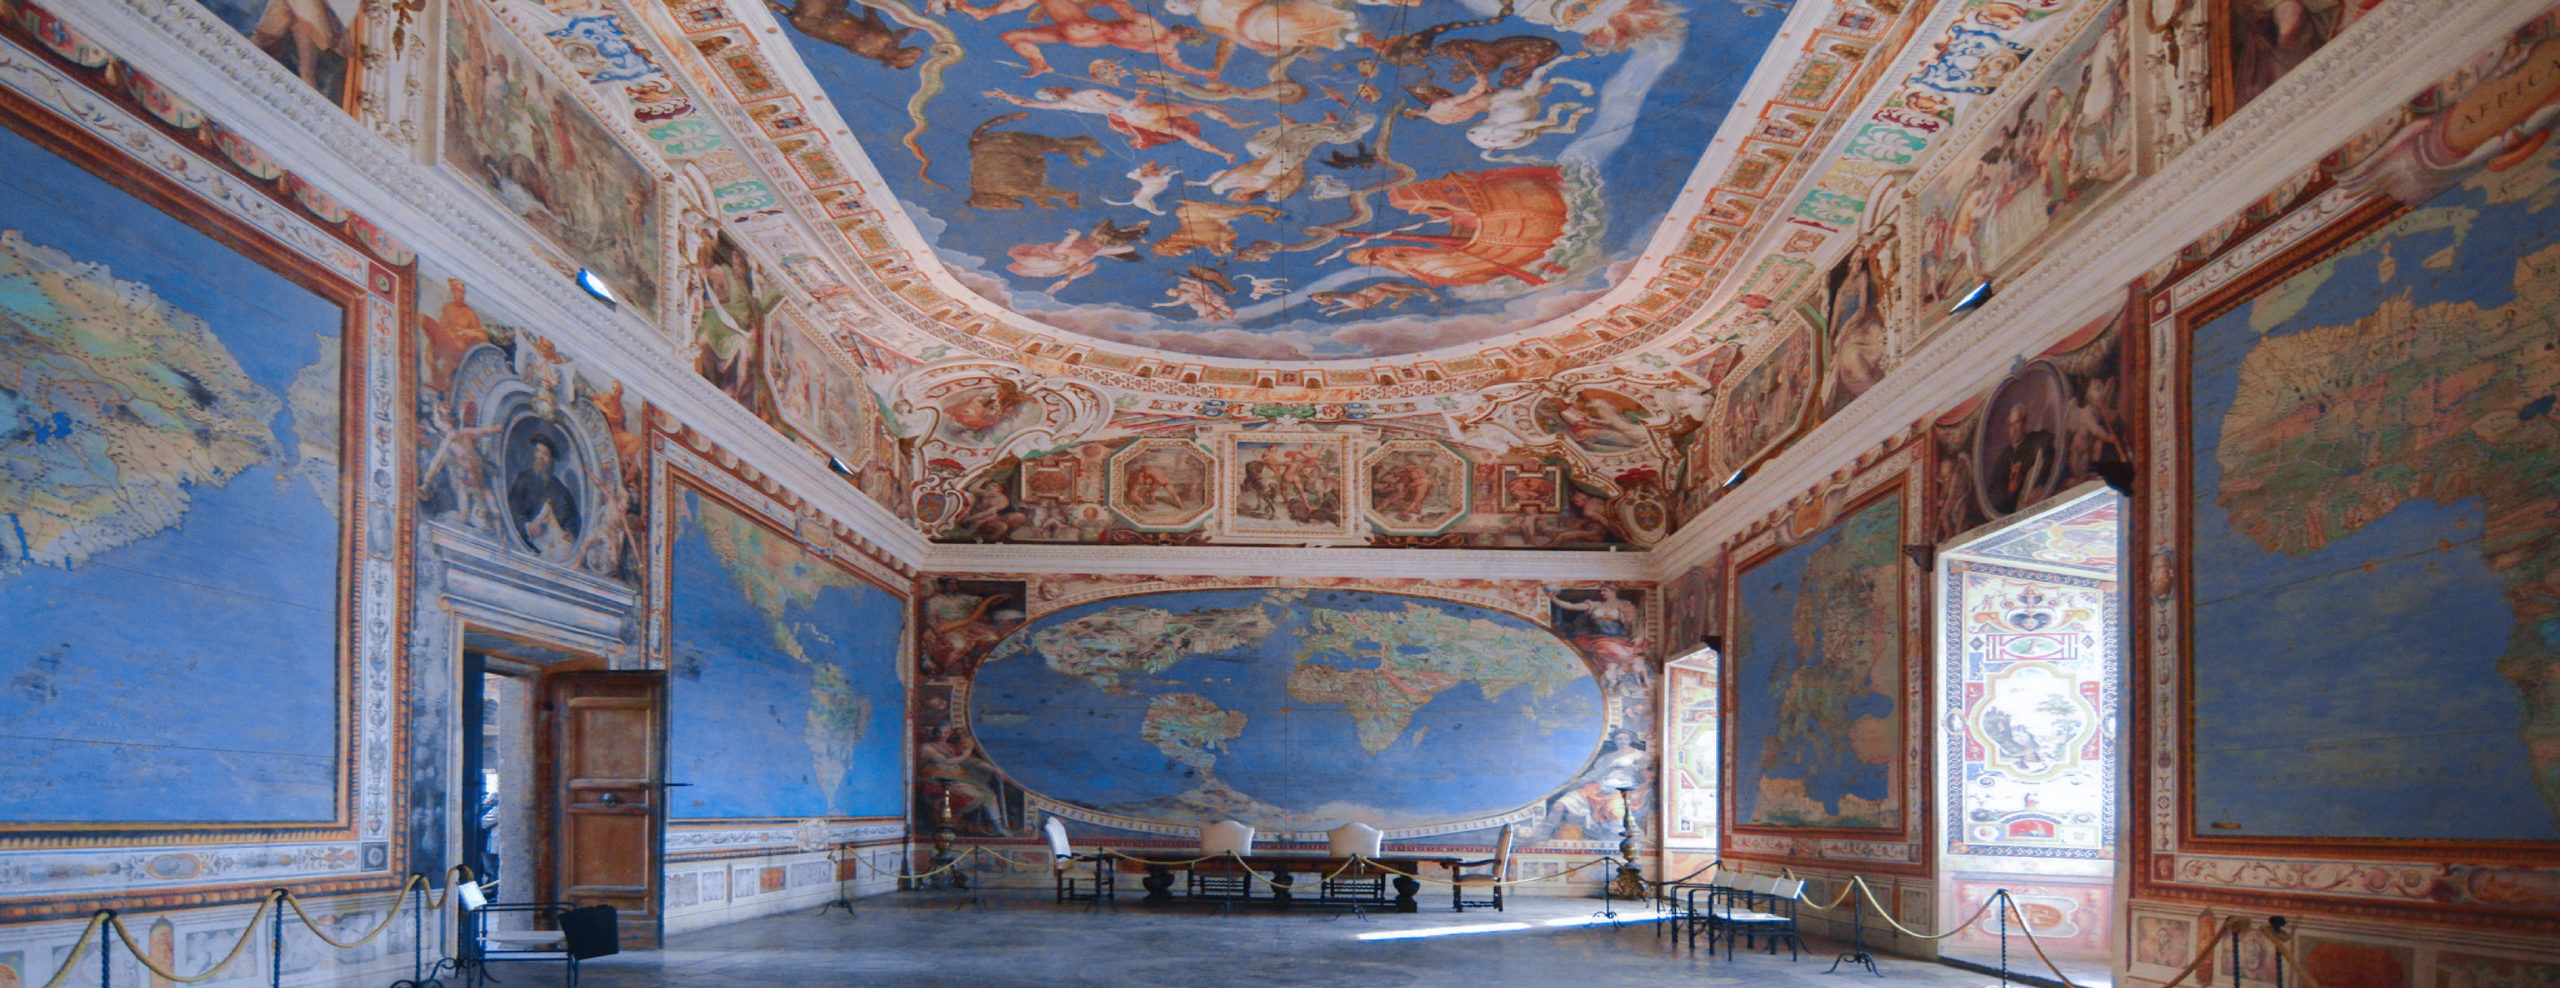 Caprarola - Sala del Mappamondo a Palazzo Farnese